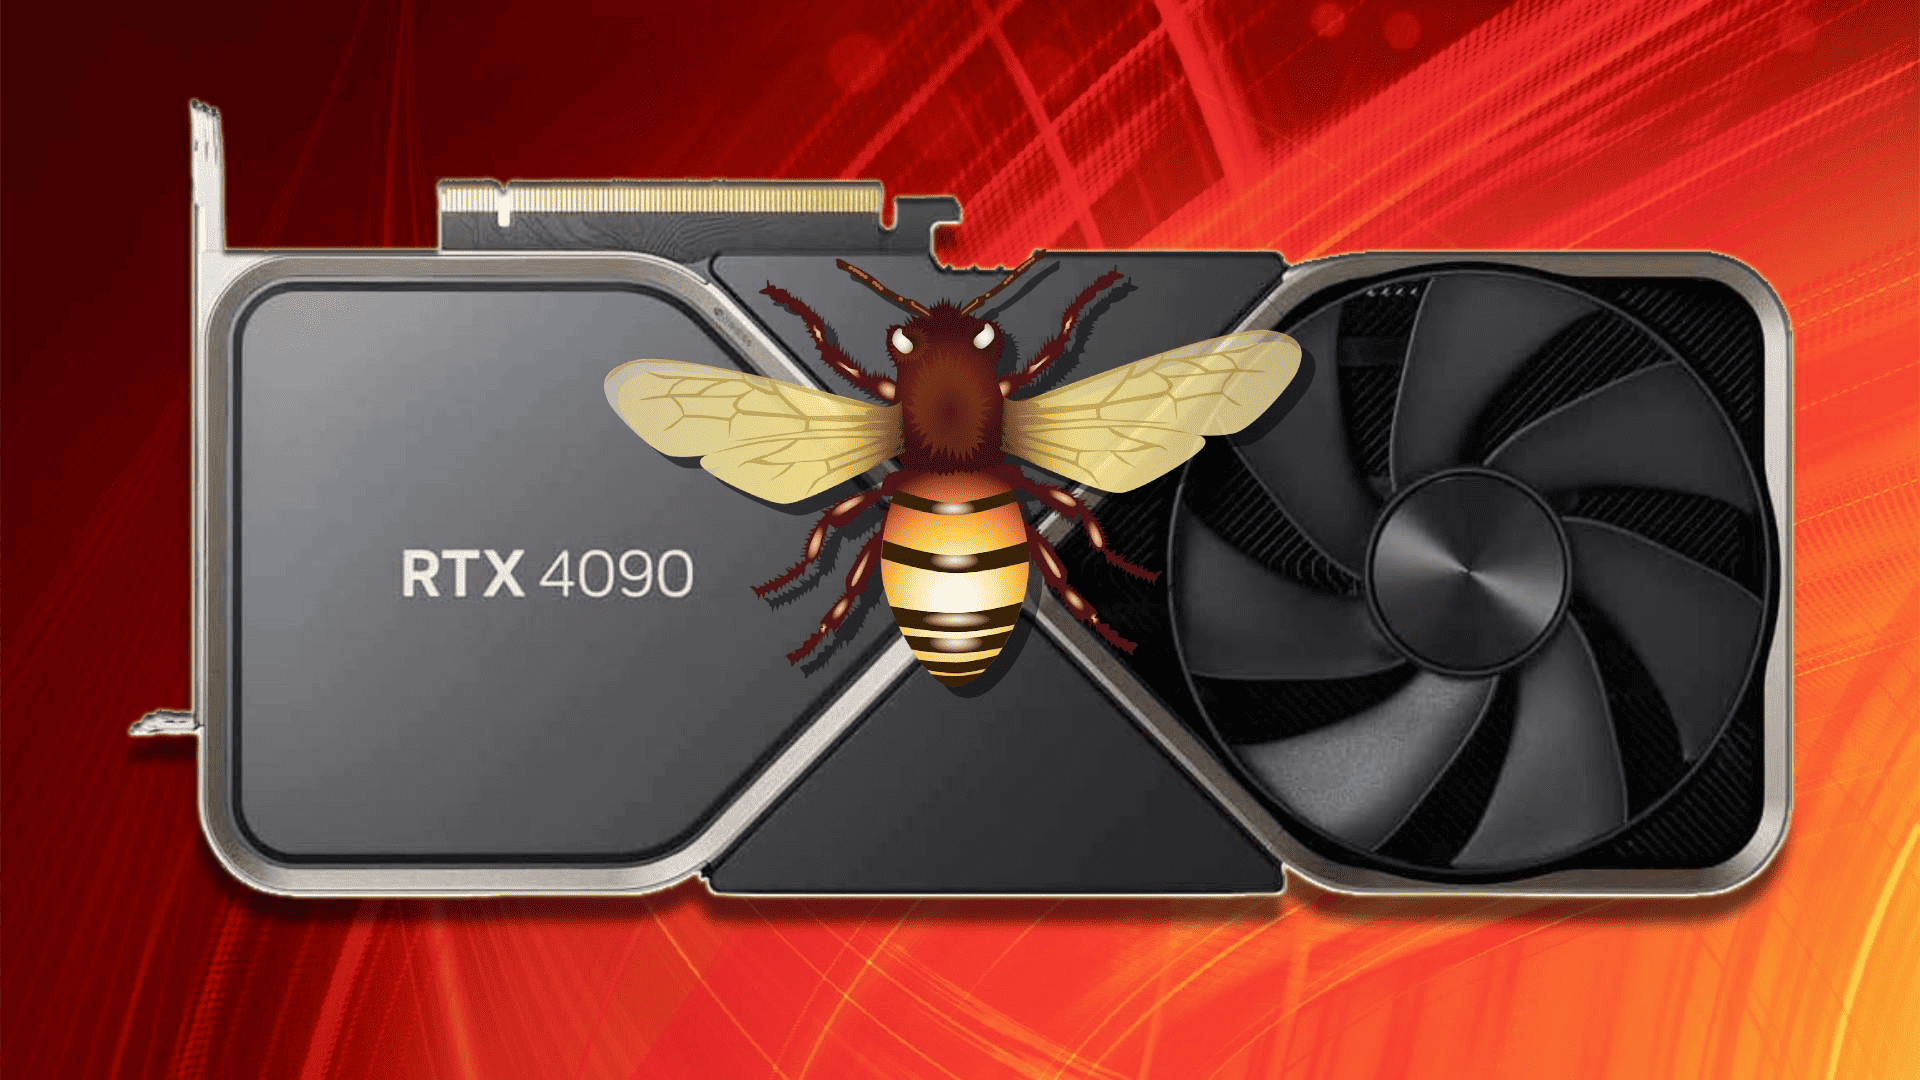 Técnico relata caso de reparo em RTX 4090 que tinha um inseto sob a GPU